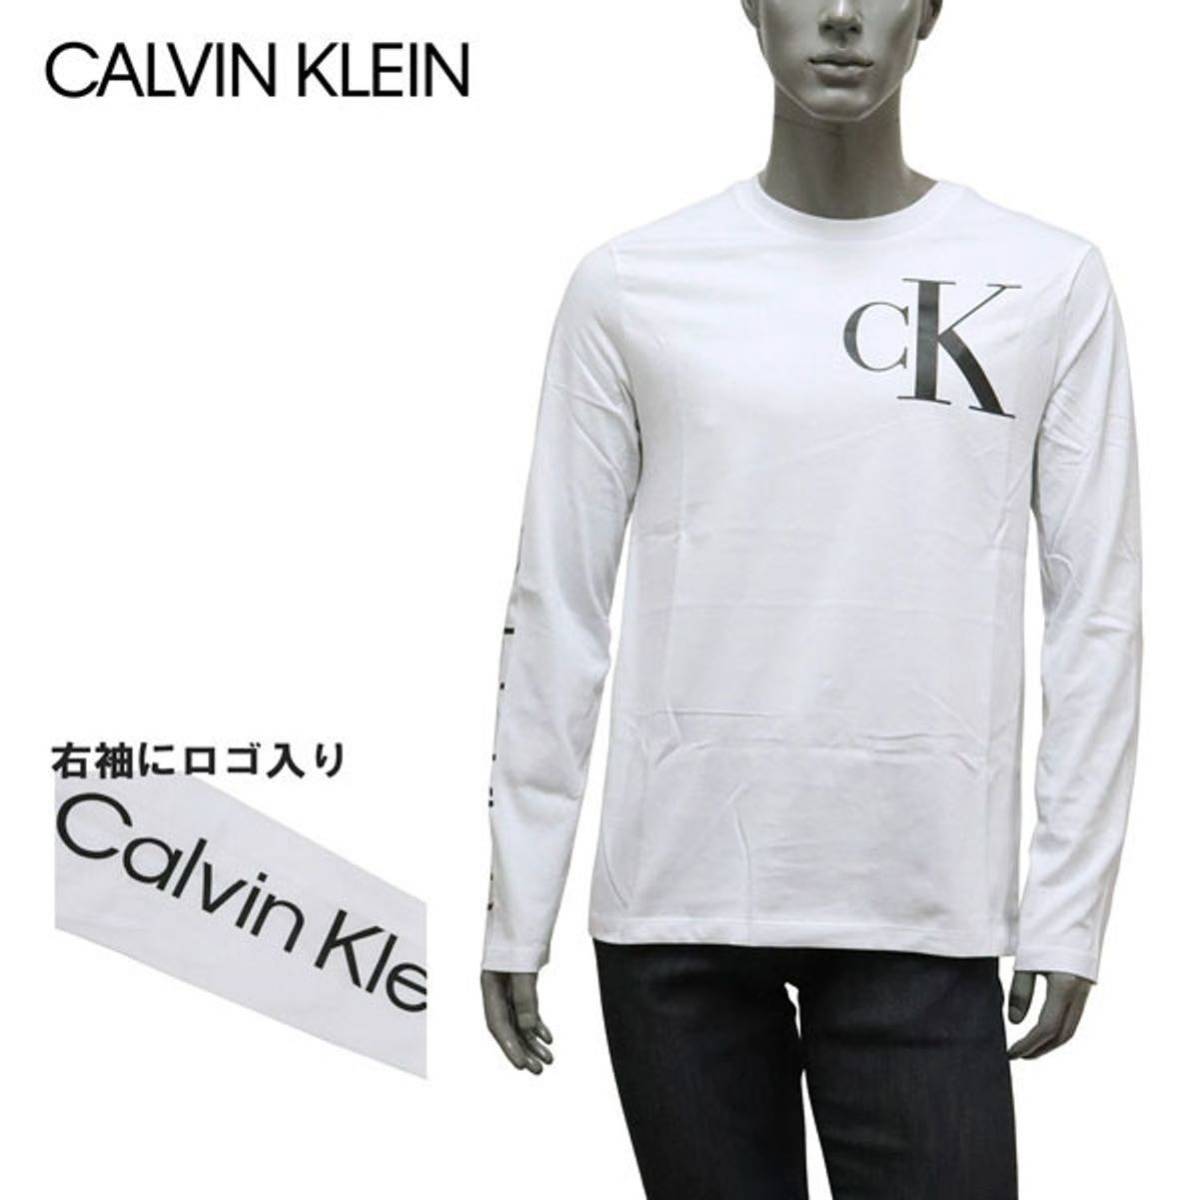 新品未使用 カルバンクライン ロンT ホワイト CK Calvin Klein BTS